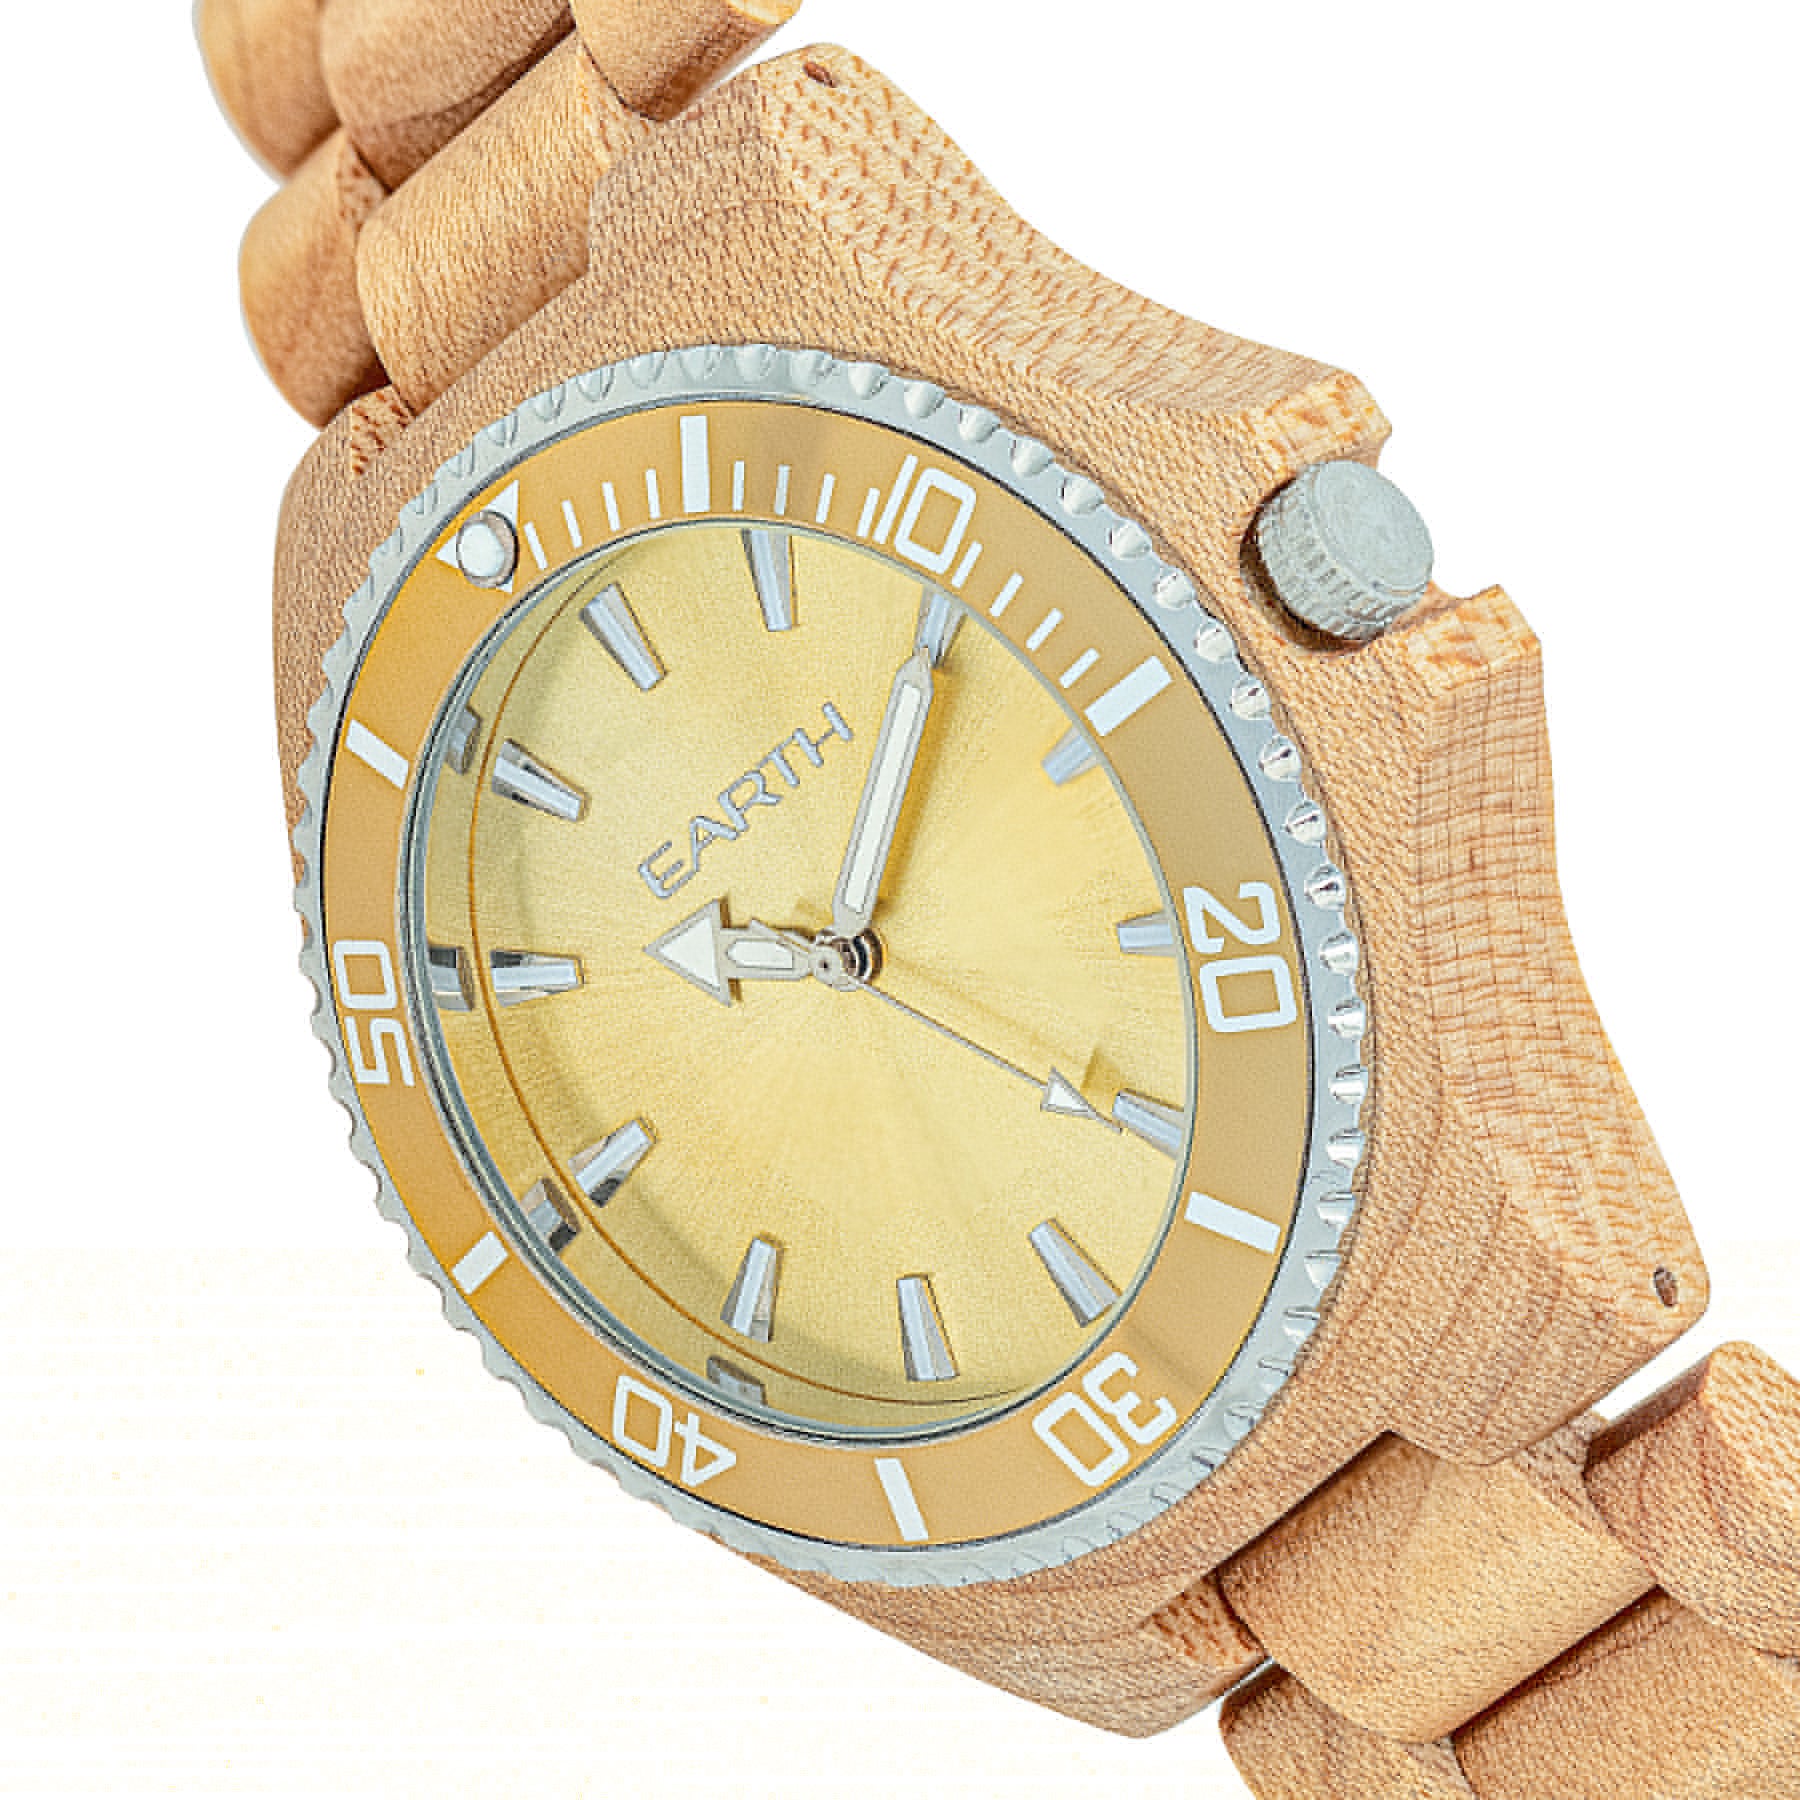 Earth Wood Centurion Bracelet Watch - Khaki/Tan  - ETHEW6001